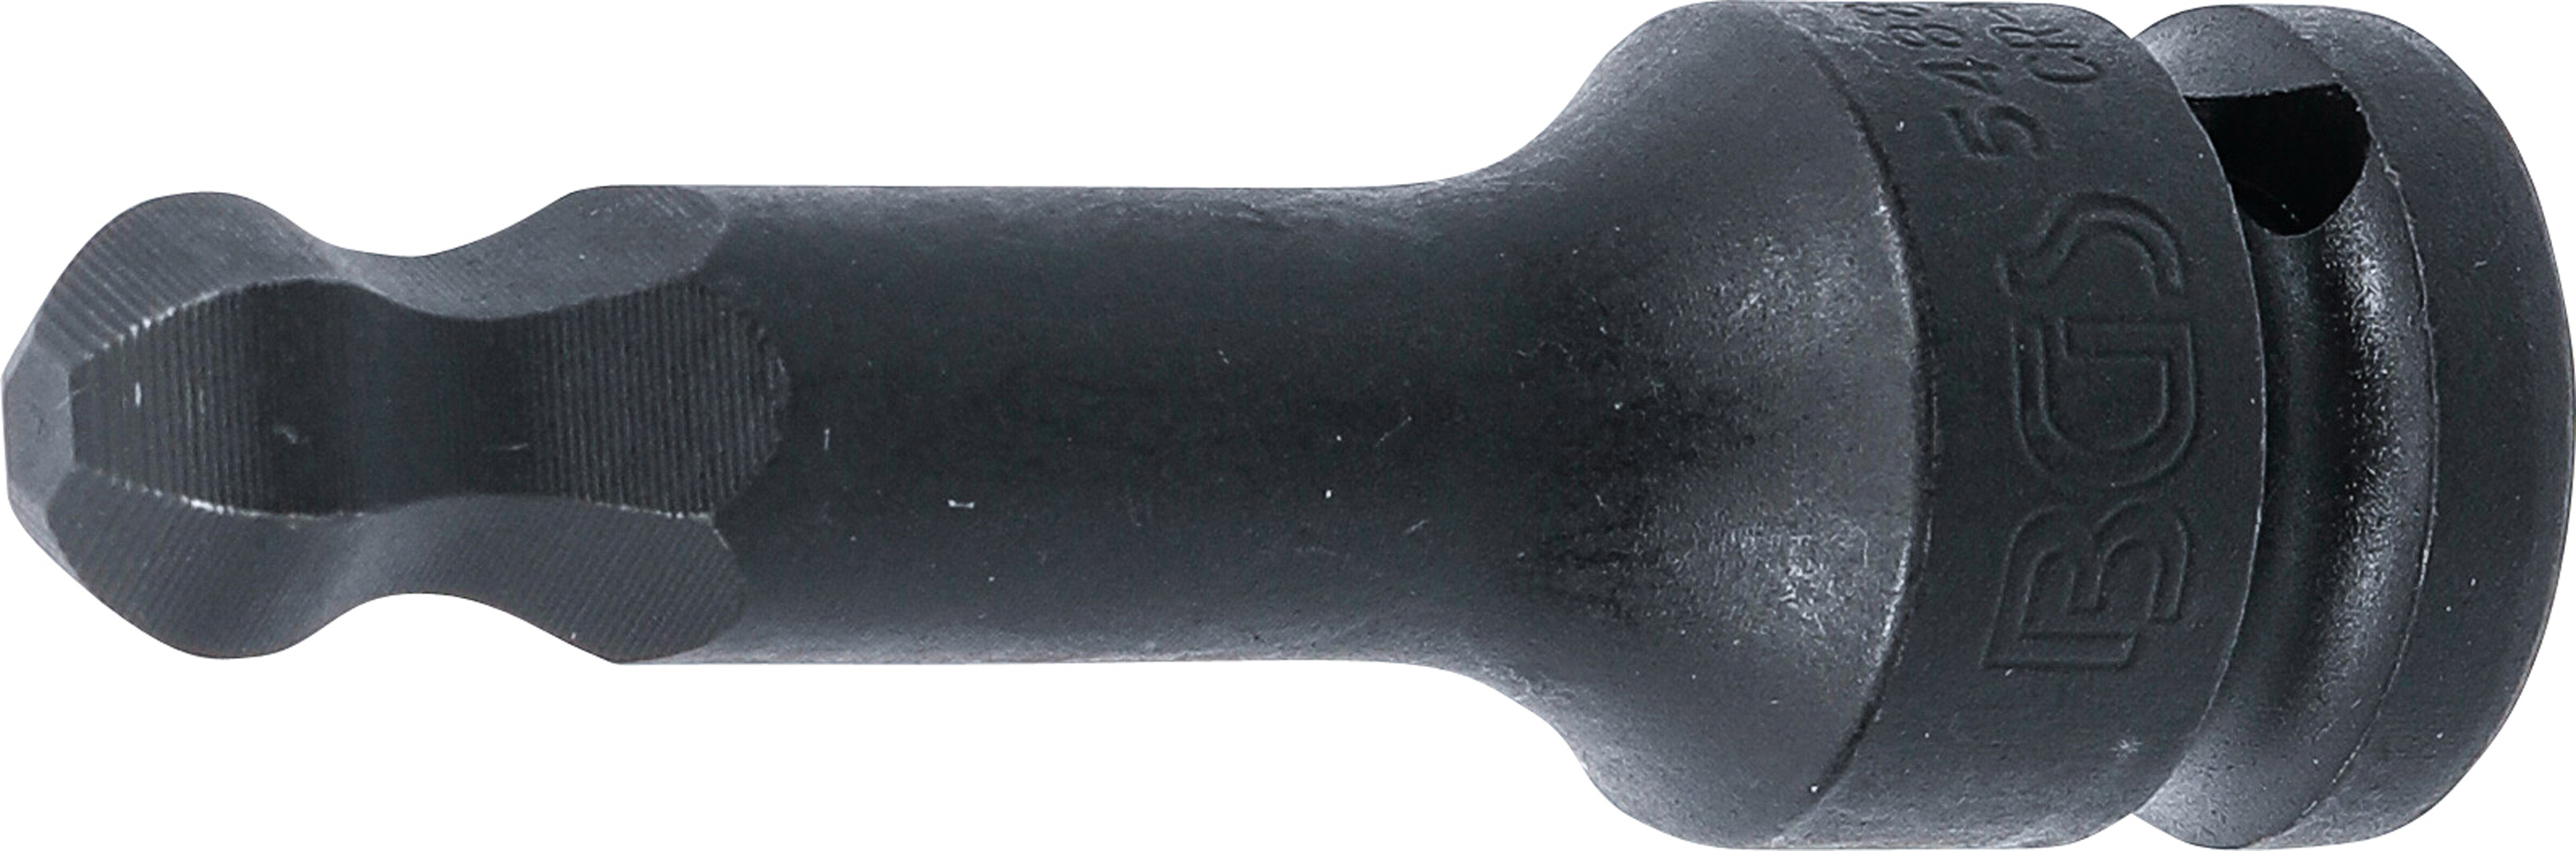 BGS Kraft-Bit-Einsatz | Länge 75 mm | Antrieb Innenvierkant 12,5 mm (1/2") | Innensechskant mit Kugelkopf 12 mm